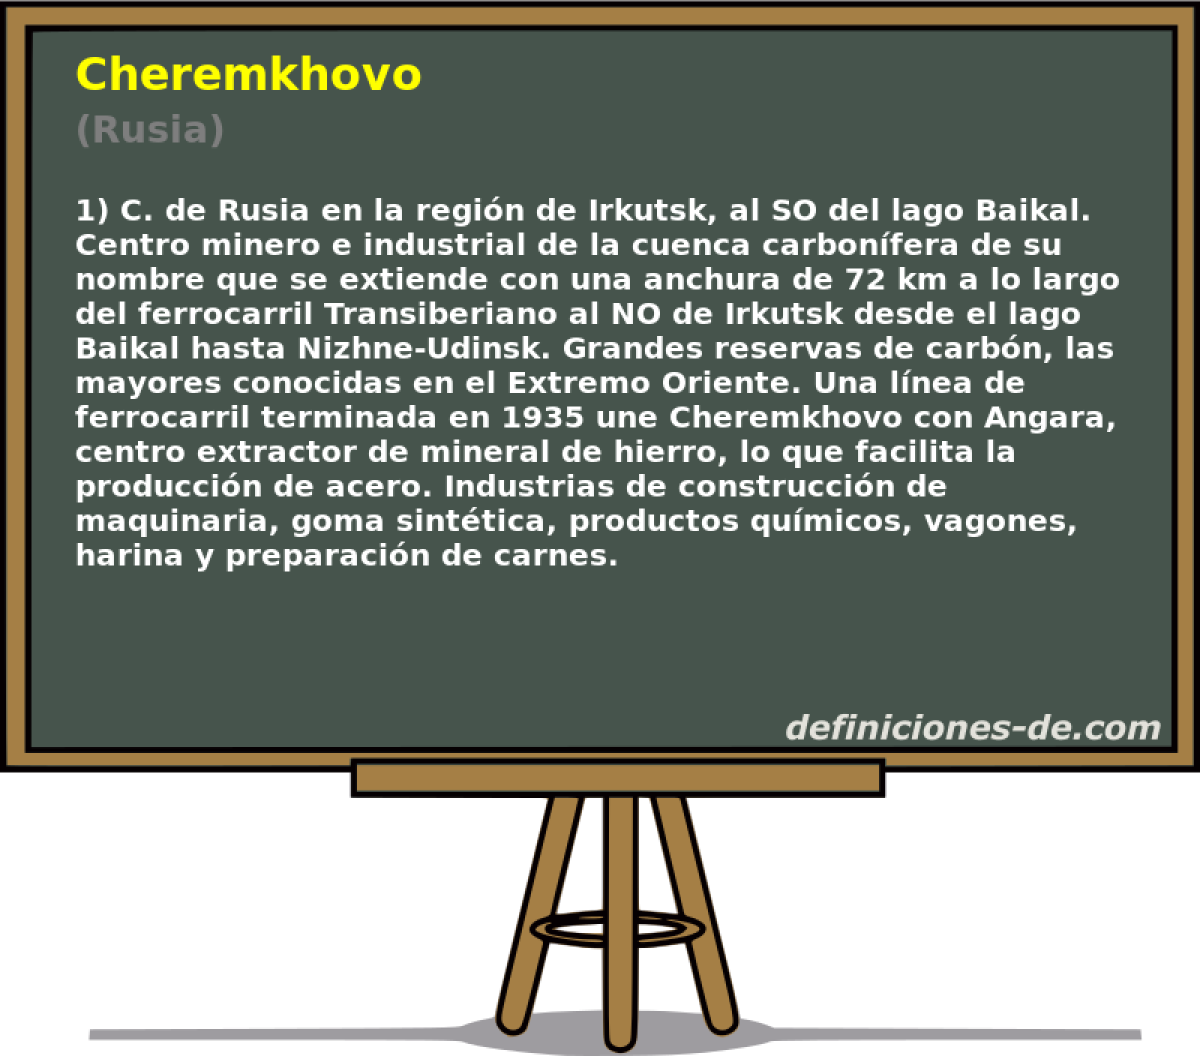 Cheremkhovo (Rusia)